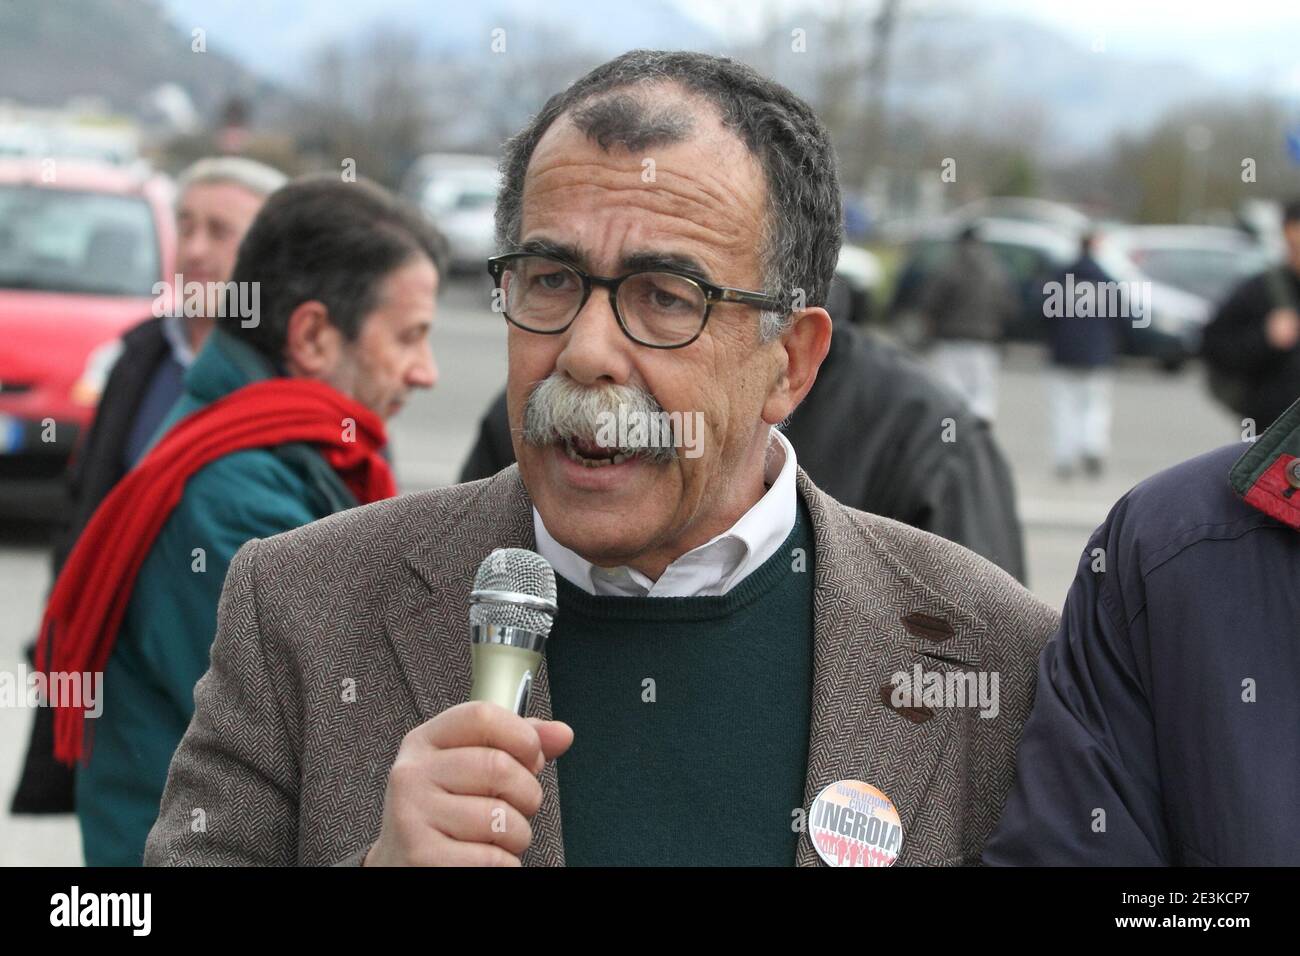 Cassino, Italia - 8 febbraio 2013: Sandro Ruotolo, candidato nella lista Rivoluzione Civile Ingroia, parla agli operai della Fiat davanti i cancelli dello stabilimento cassinate Banque D'Images